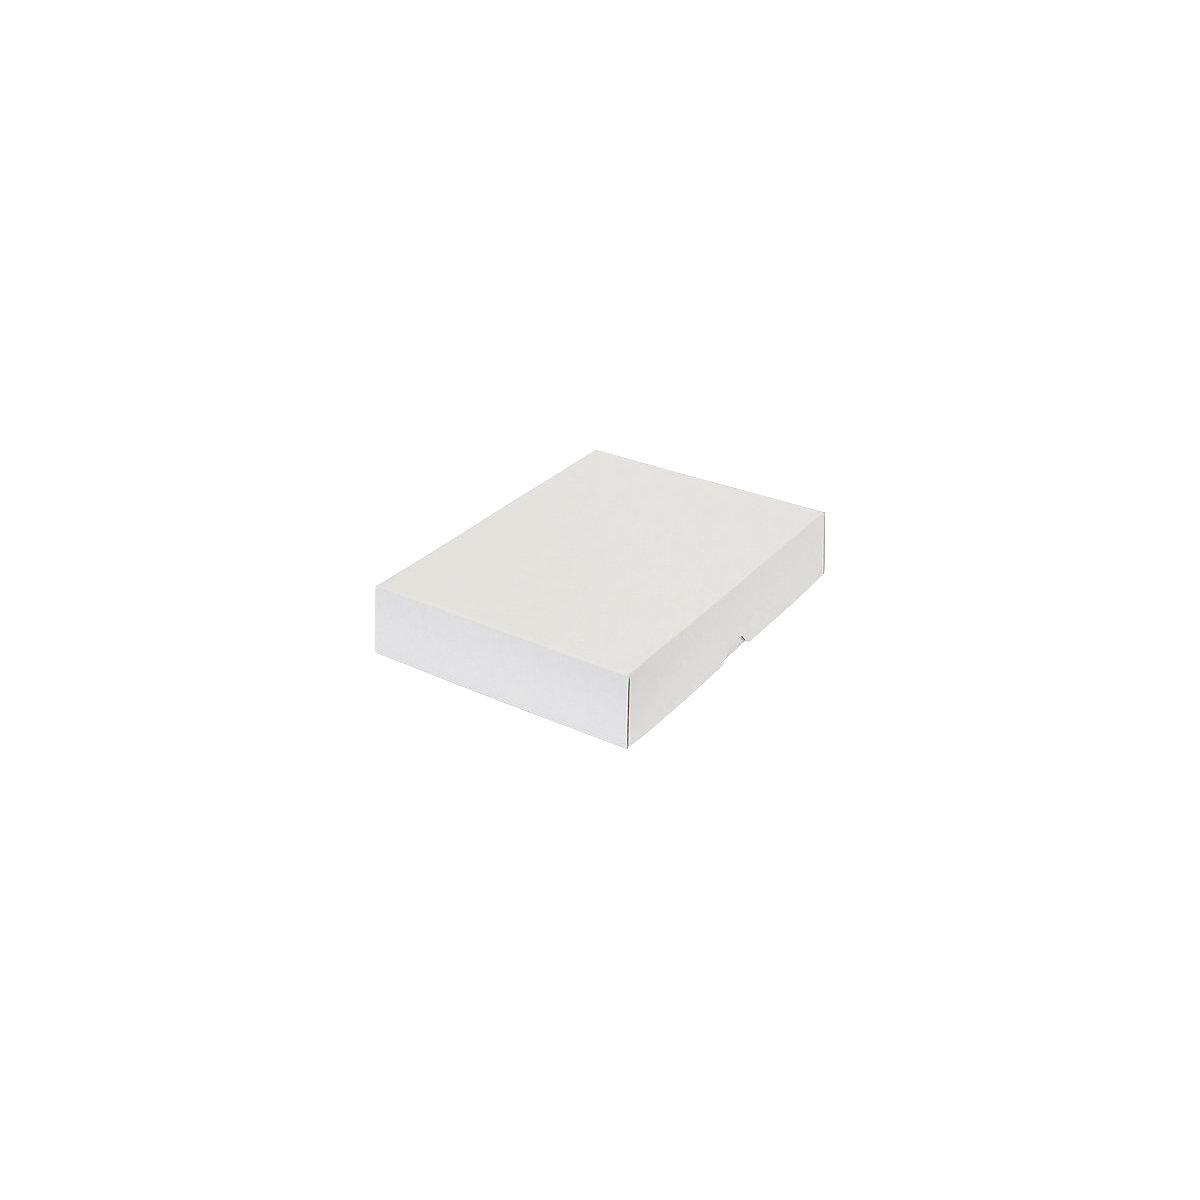 Stülpdeckelkarton, zweiteilig, Innenmaße 302 x 213 x 55 mm, A4, weiß, ab 30 Stk-50